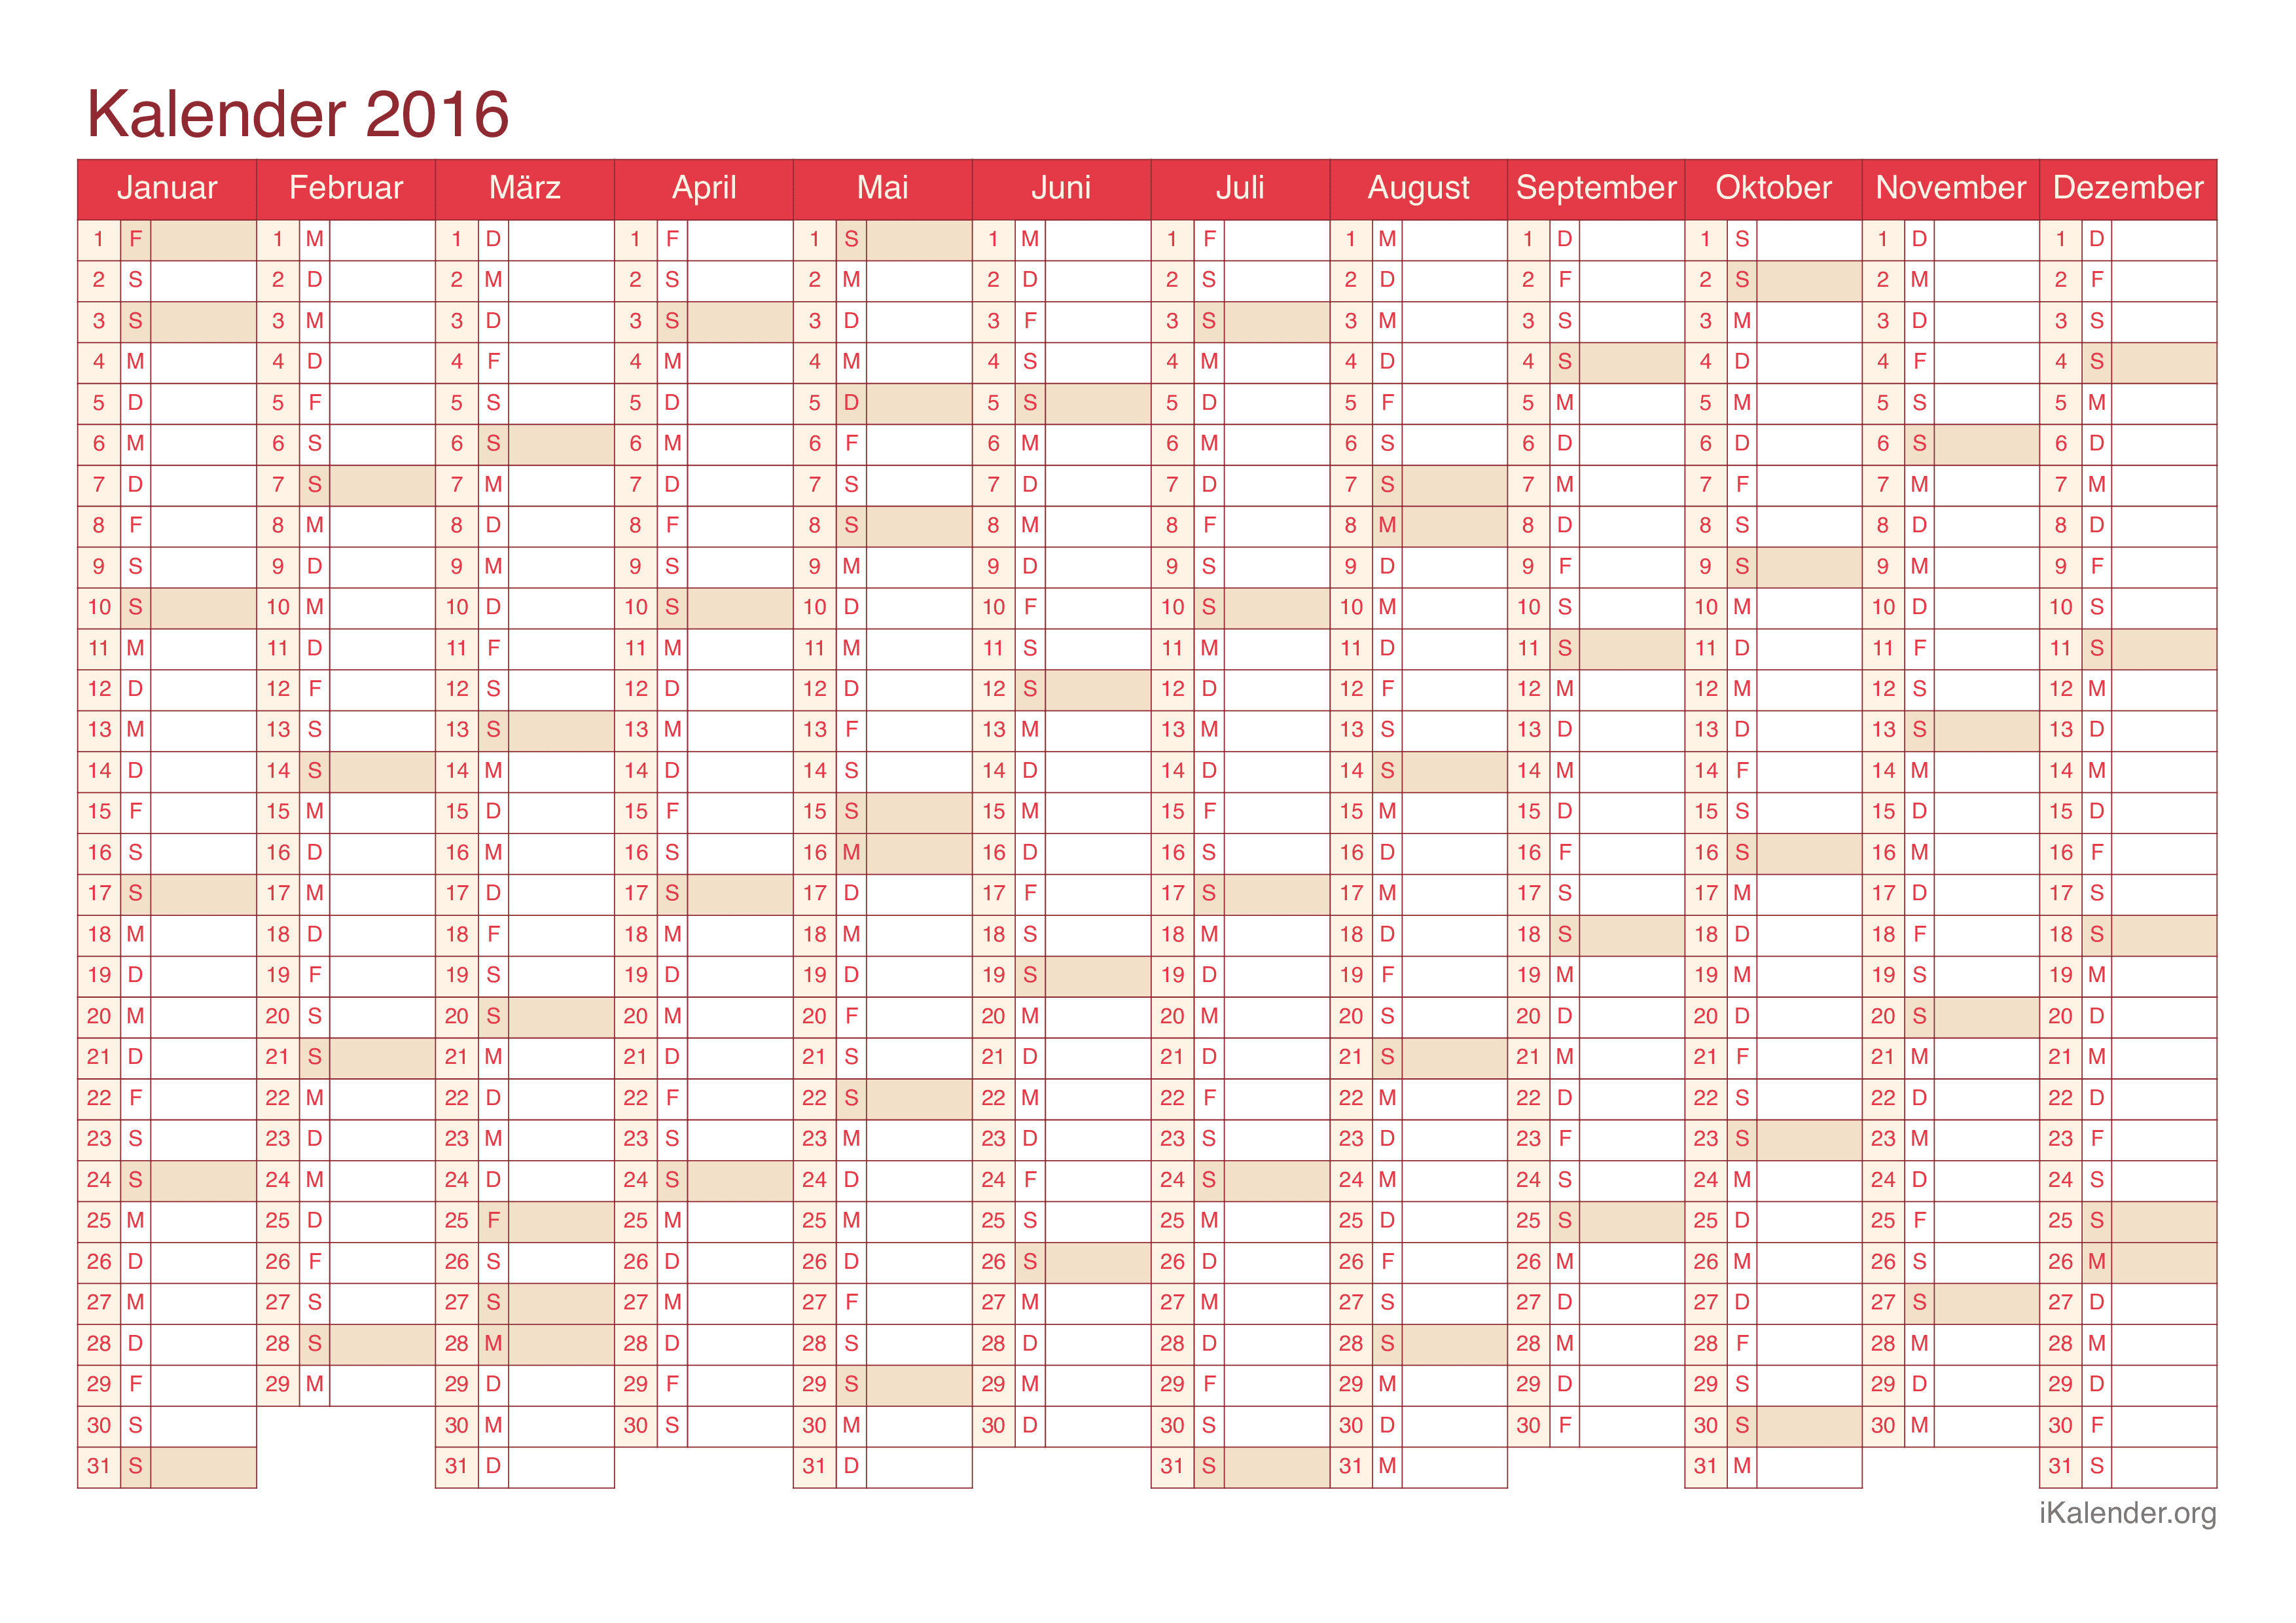 Jahreskalender 2016 - Cherry